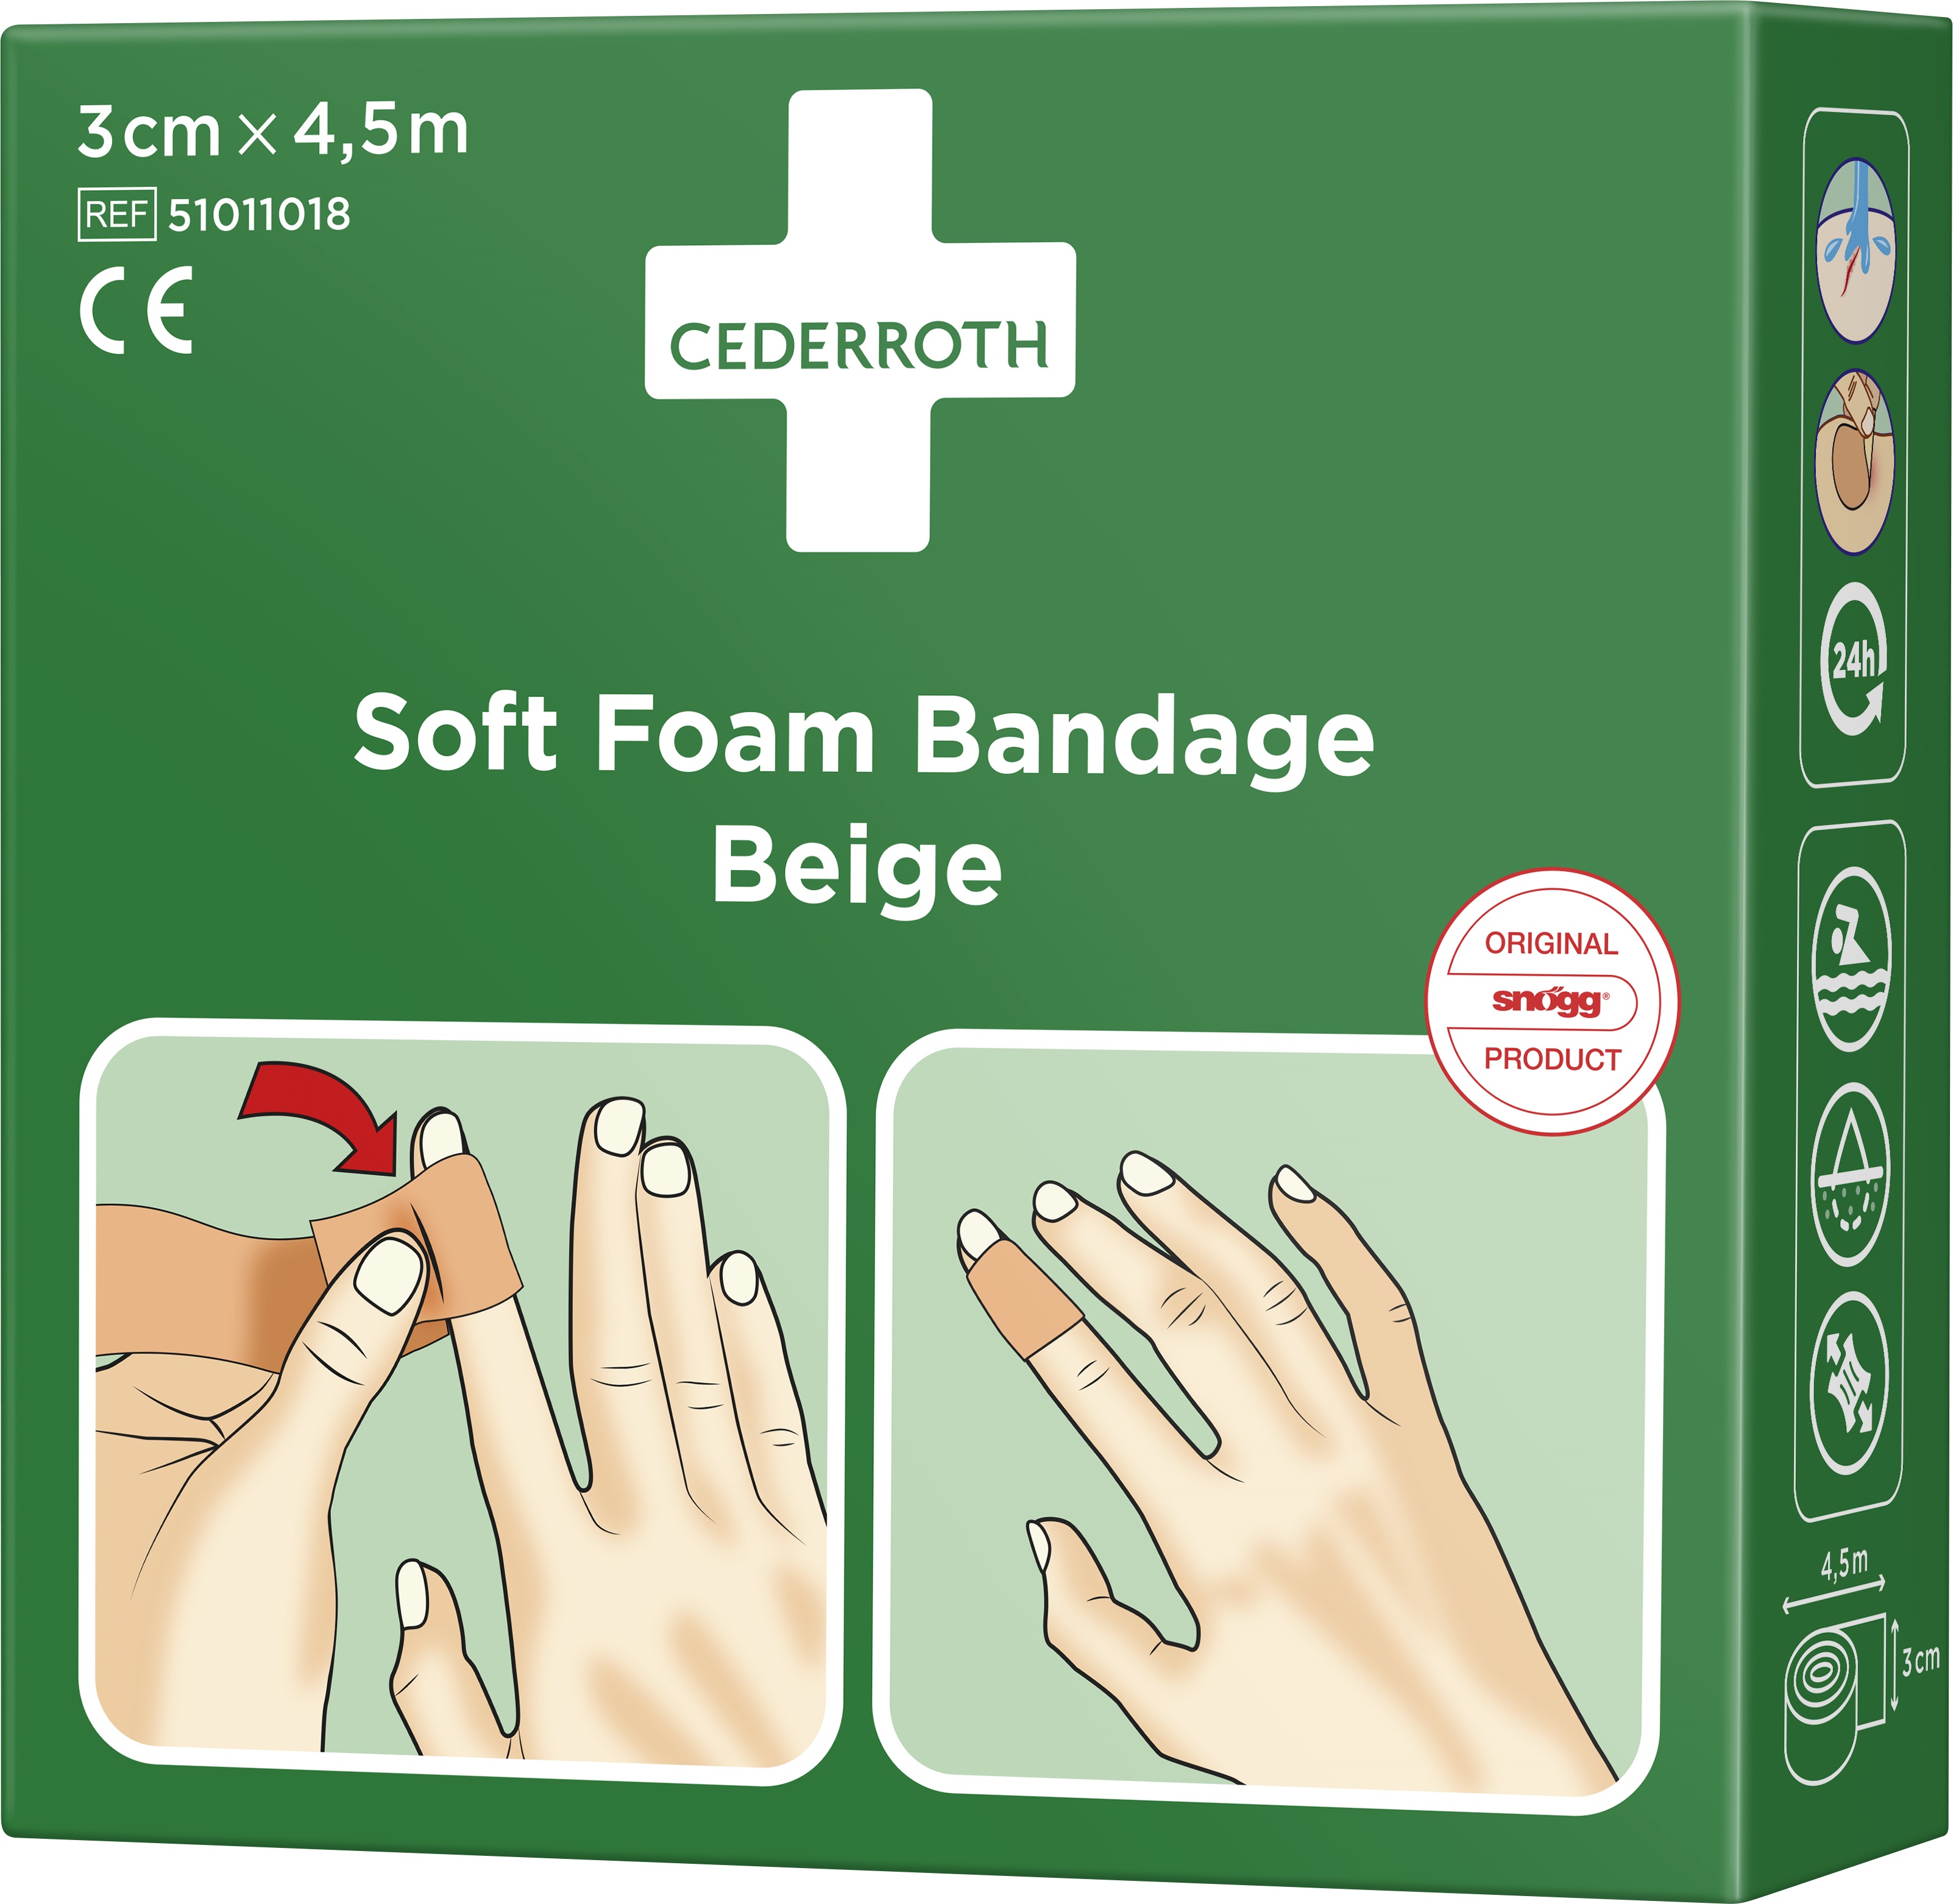 Soft foam bandage Cederroth 51011018